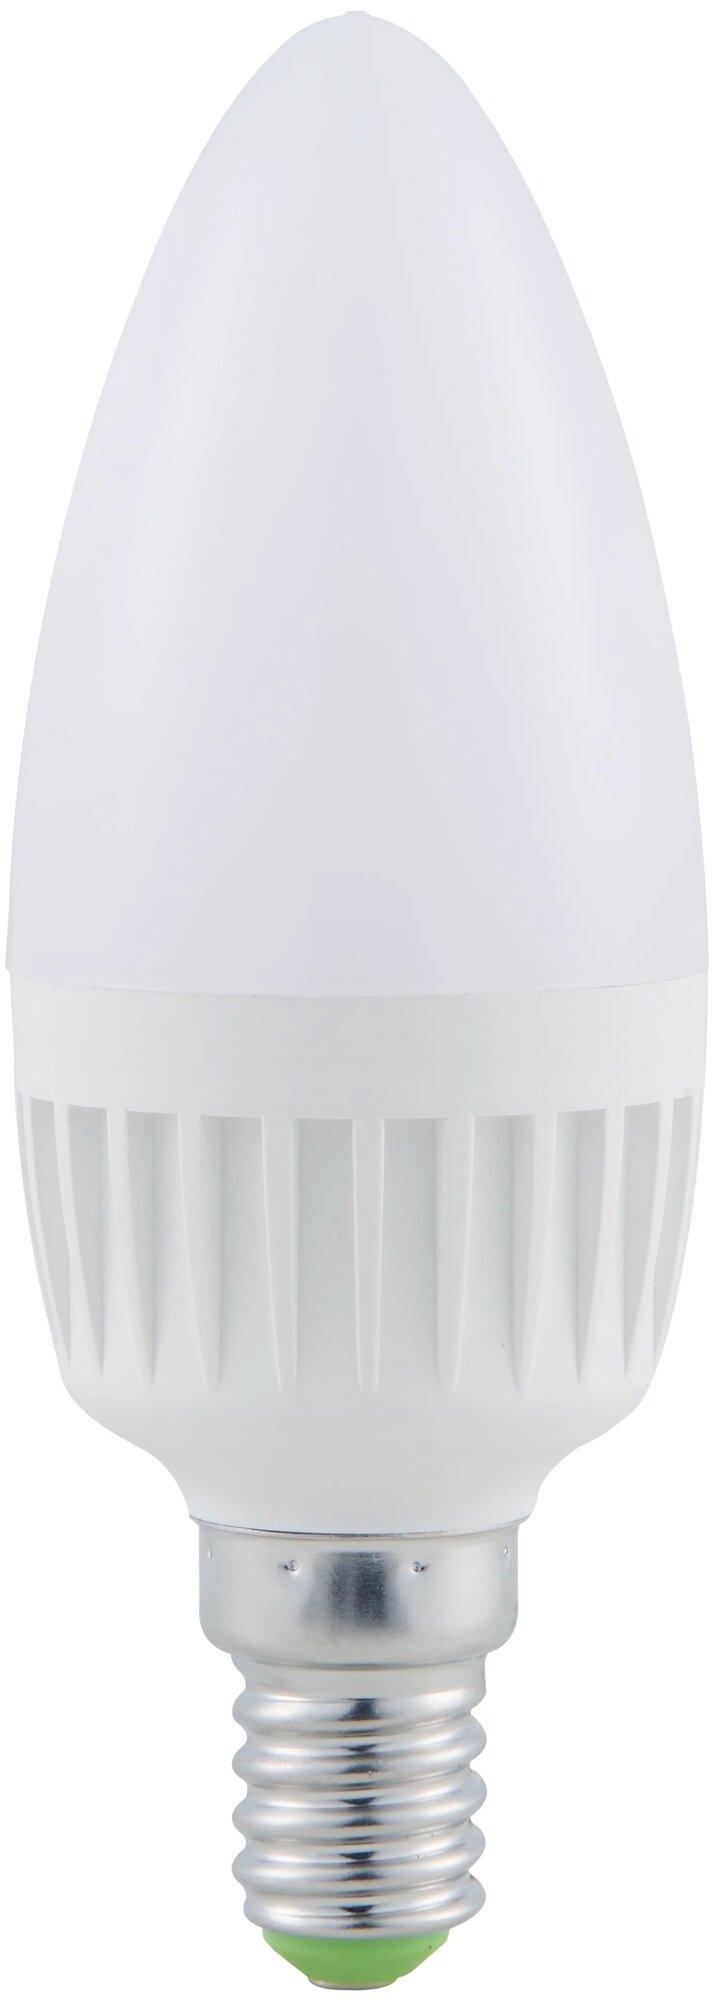 Лампочка Navigator SUPERVISION, свеча 6 Вт, теплый белый свет, E14